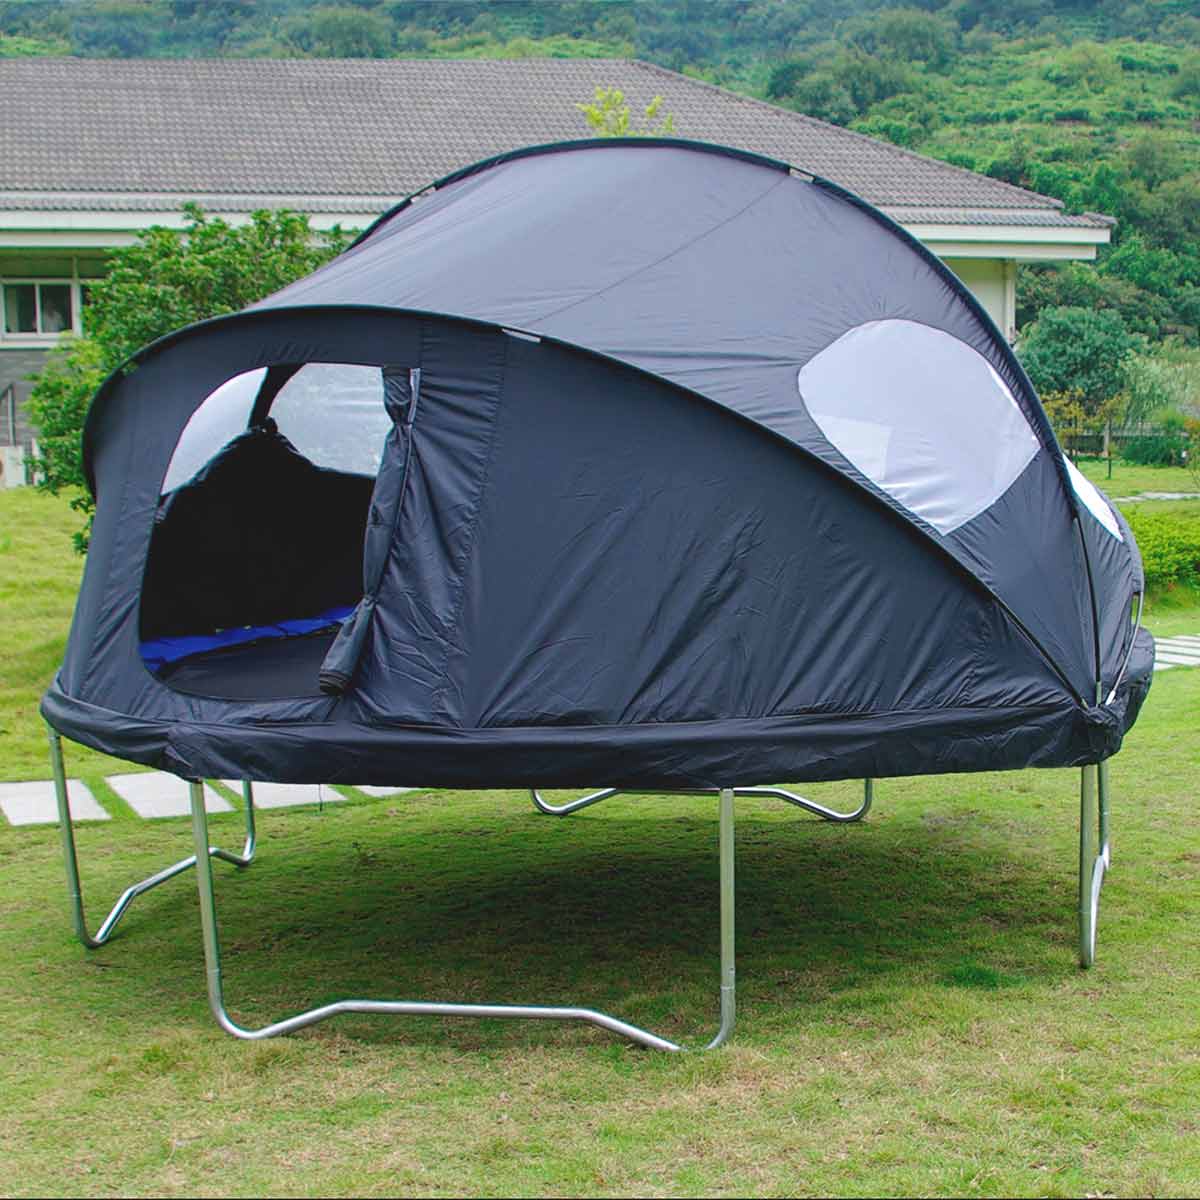 Un trampoline sur le terrain avec une tente trampoline installée